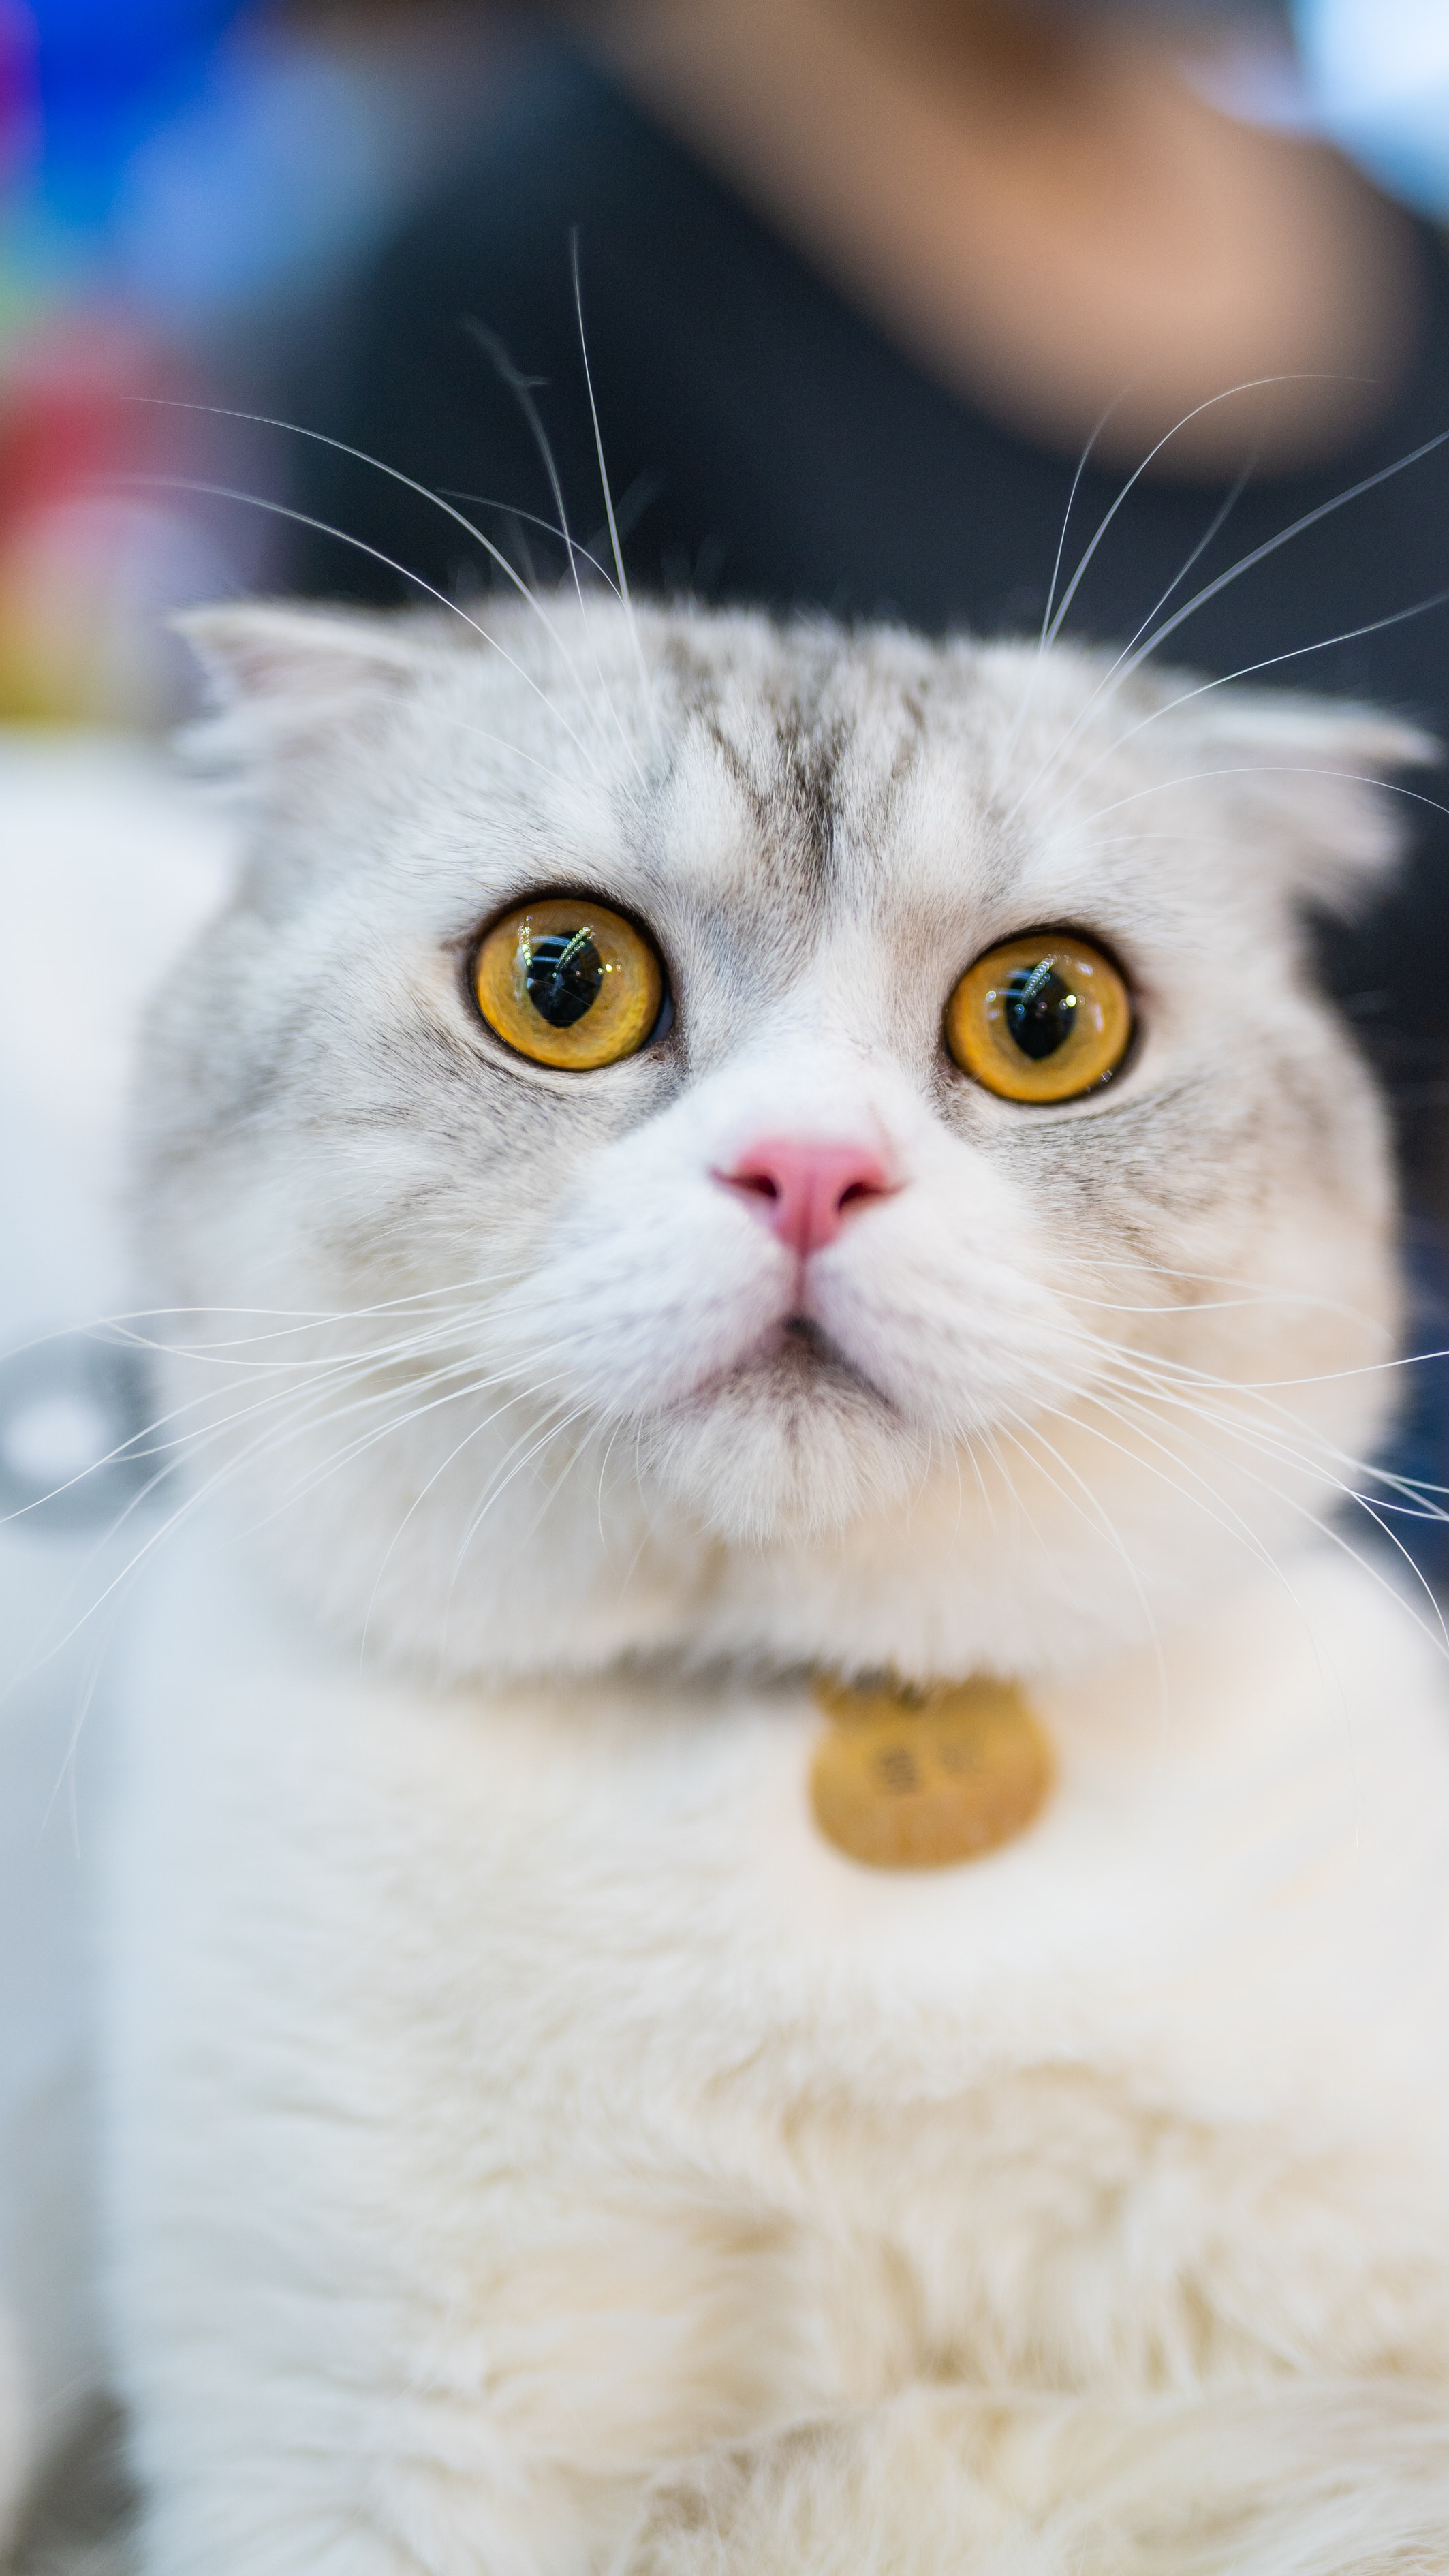 Dünya Kediler Günü nedir, nasıl ortaya çıktı? En tatlı Kediler Günü mesajları 